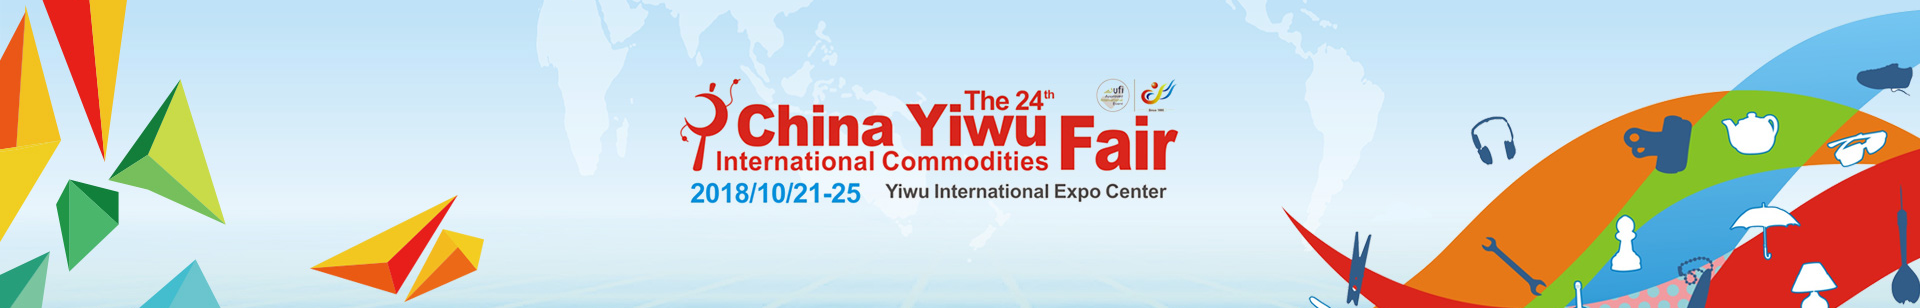 China Yiwu International Commodities Fair